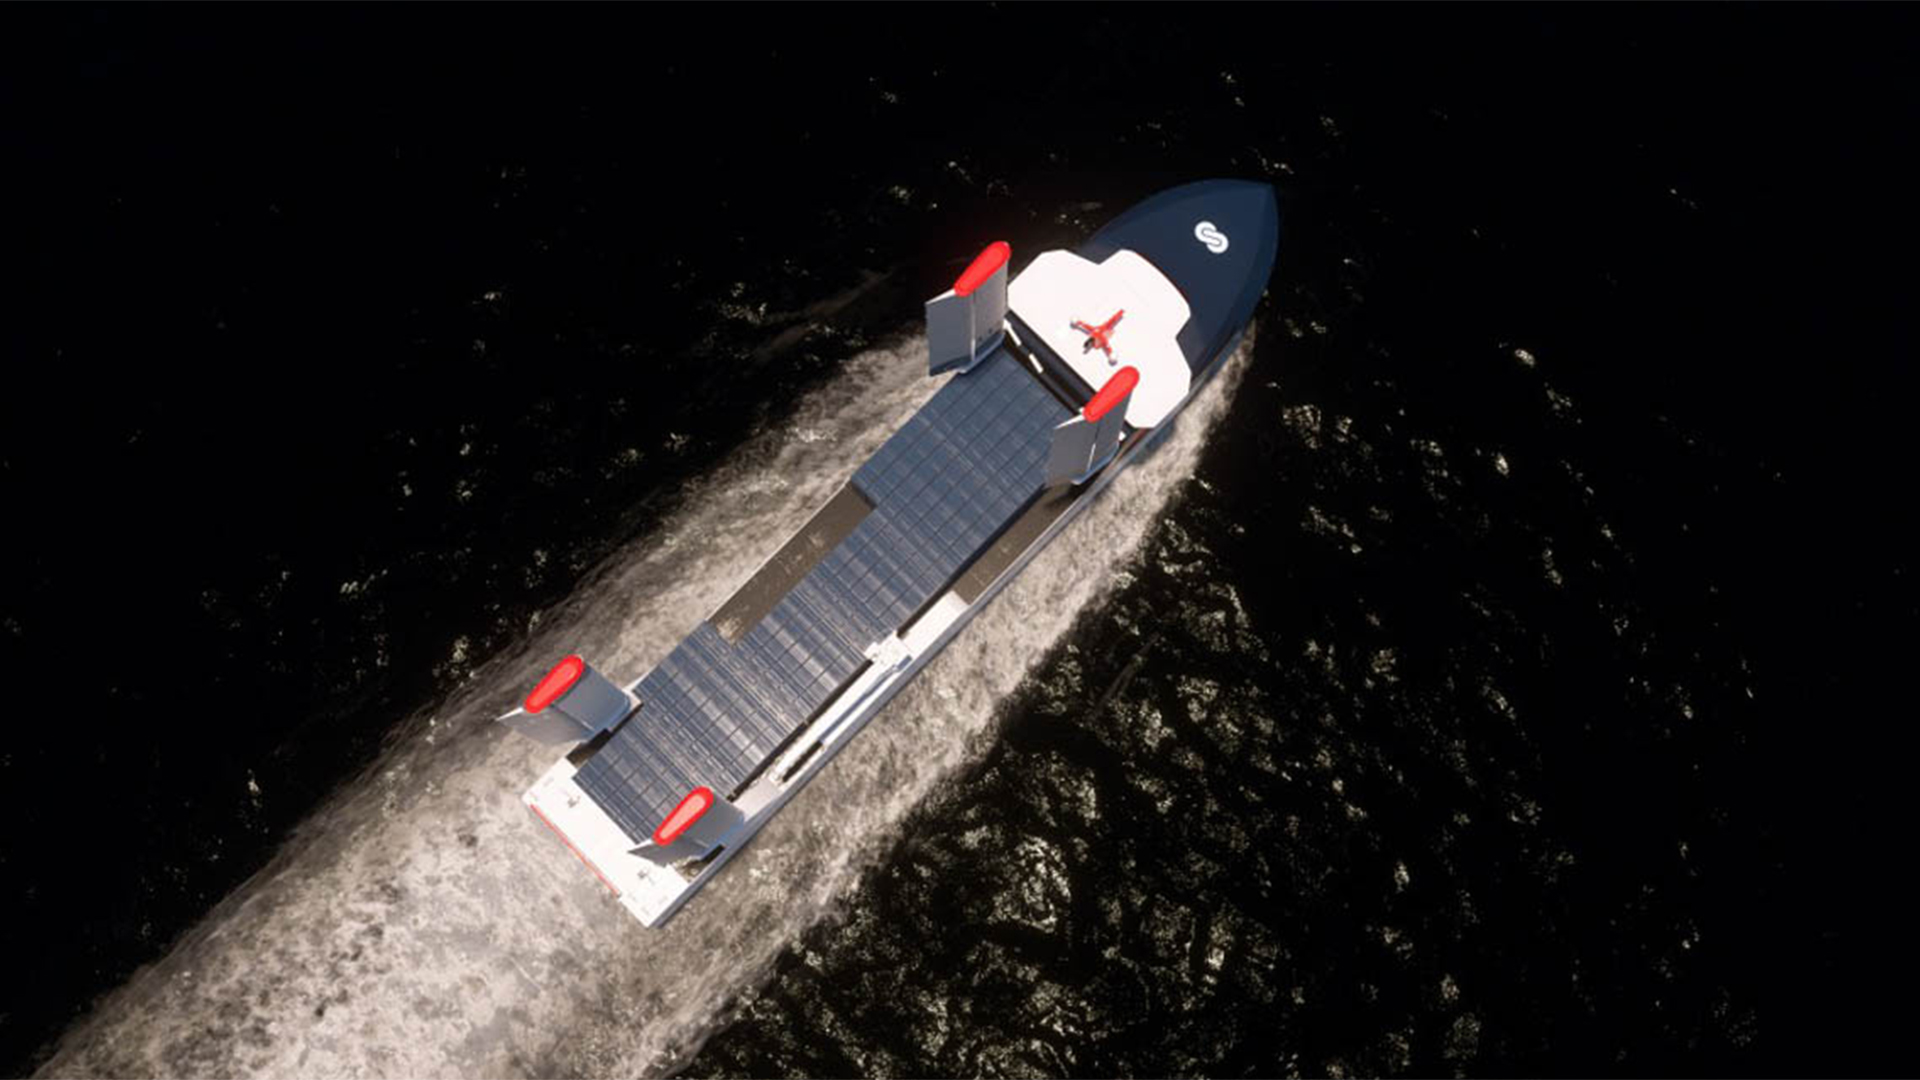 La vista aérea permite apreciar la gran superficie de paneles solares de la cubierta del buque